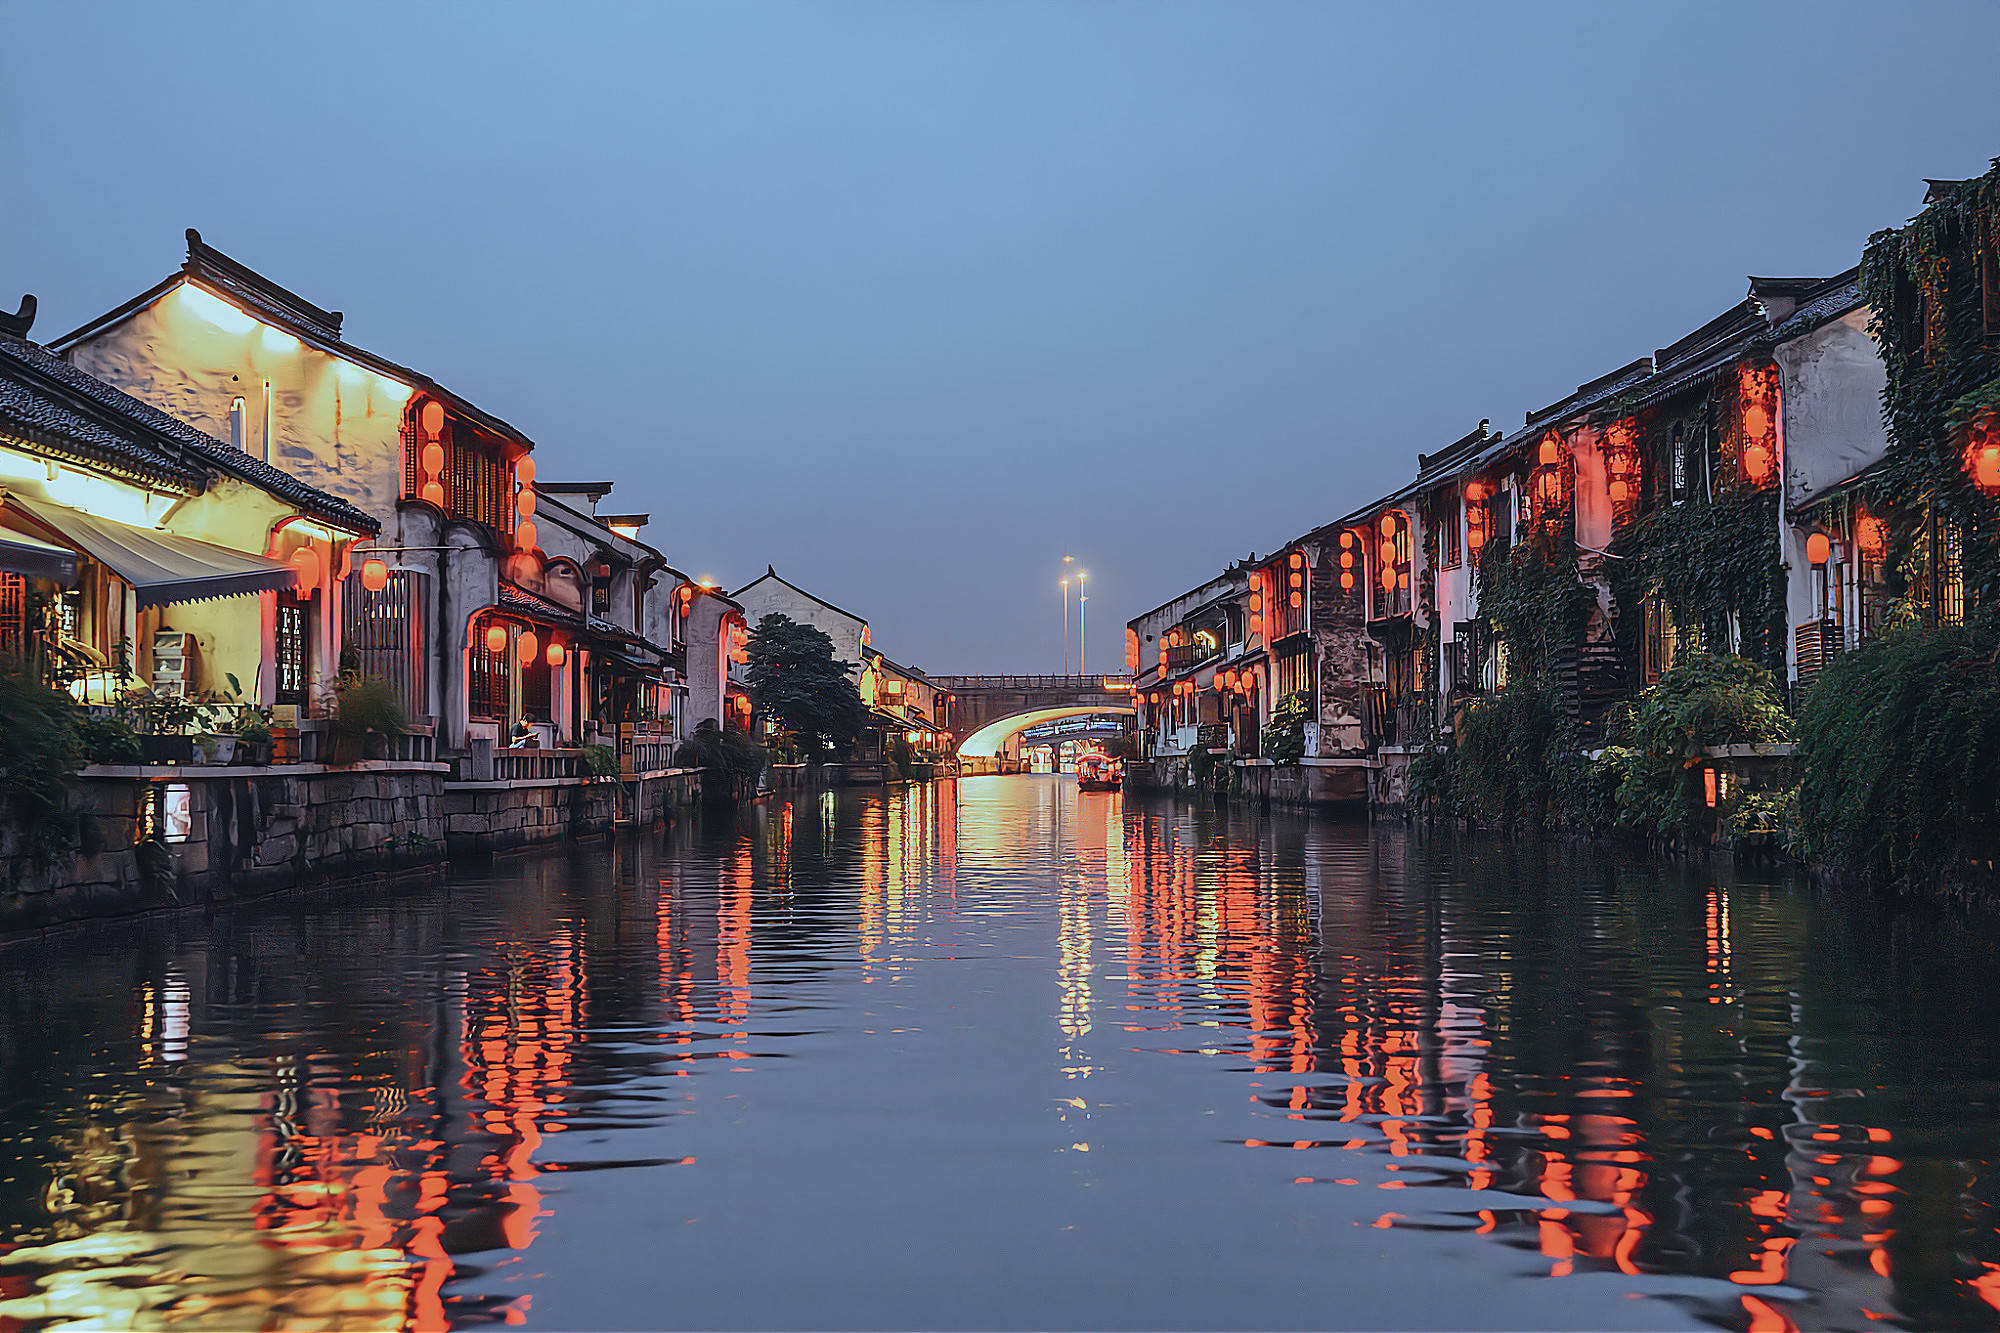 原创无锡夜色最美的地方,千年古运河尽显古色古香,堪比南京秦淮河